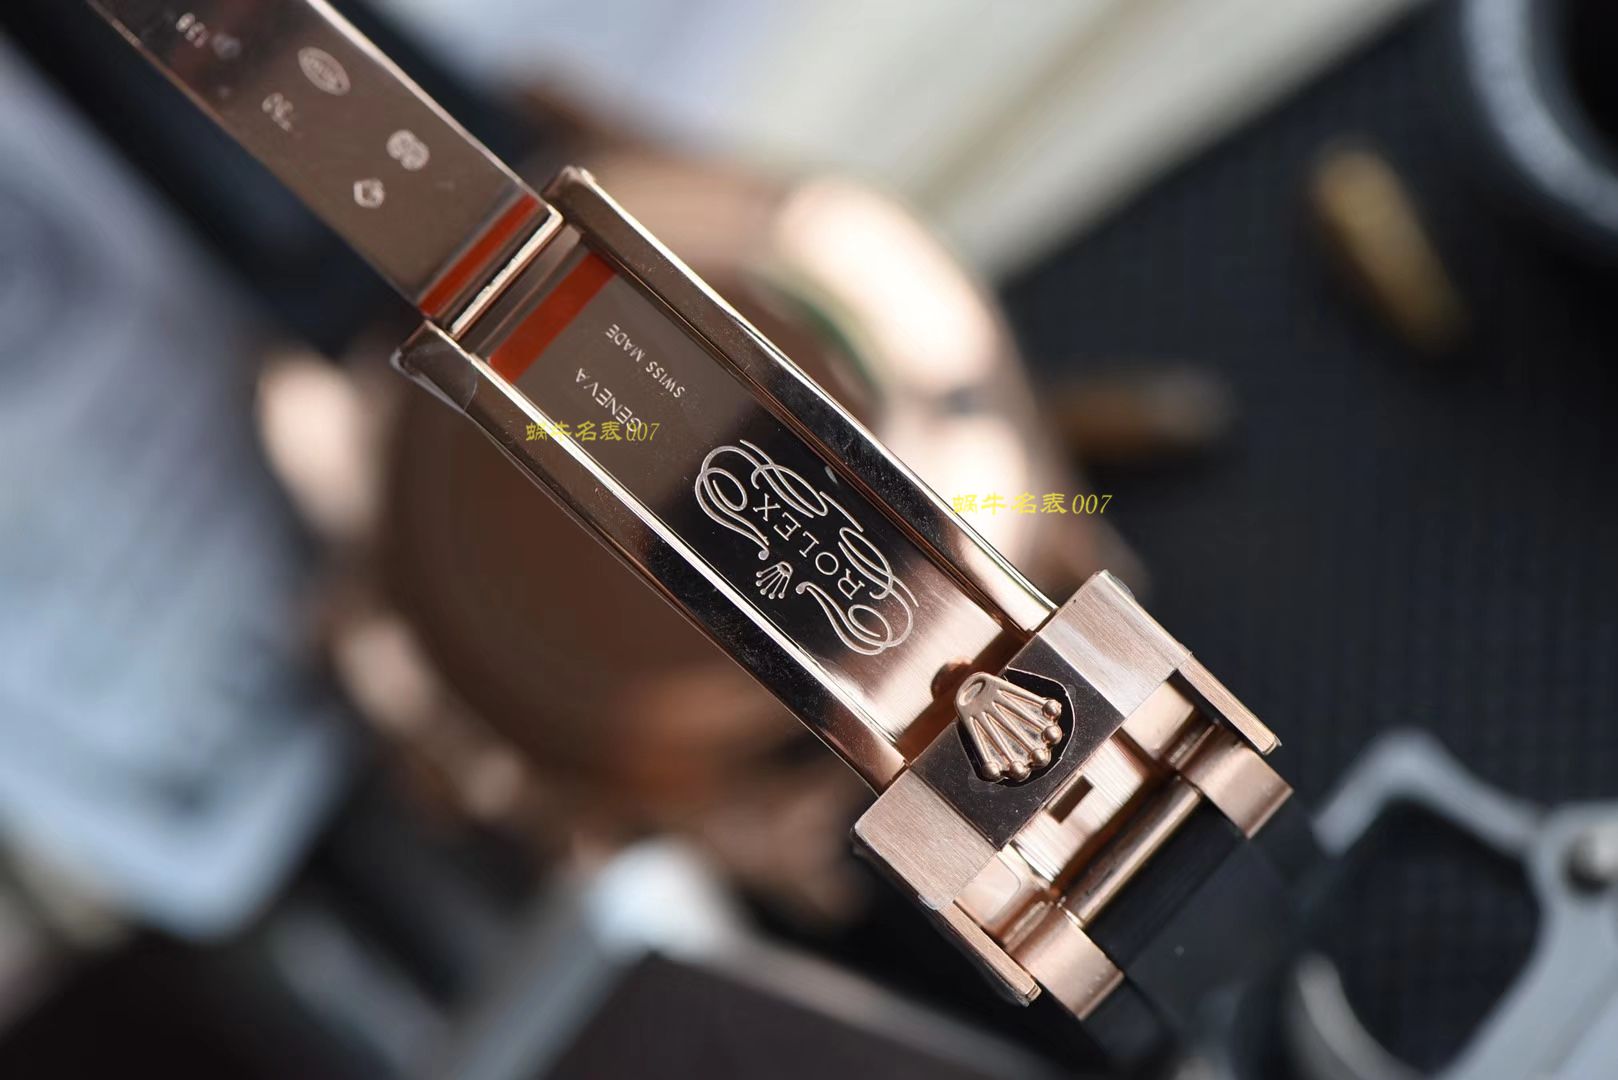 【视频评测N厂超级胶带款4130迪通拿】一比一复刻Rolex劳力士宇宙计型迪通拿系列M116515ln-0019腕表 